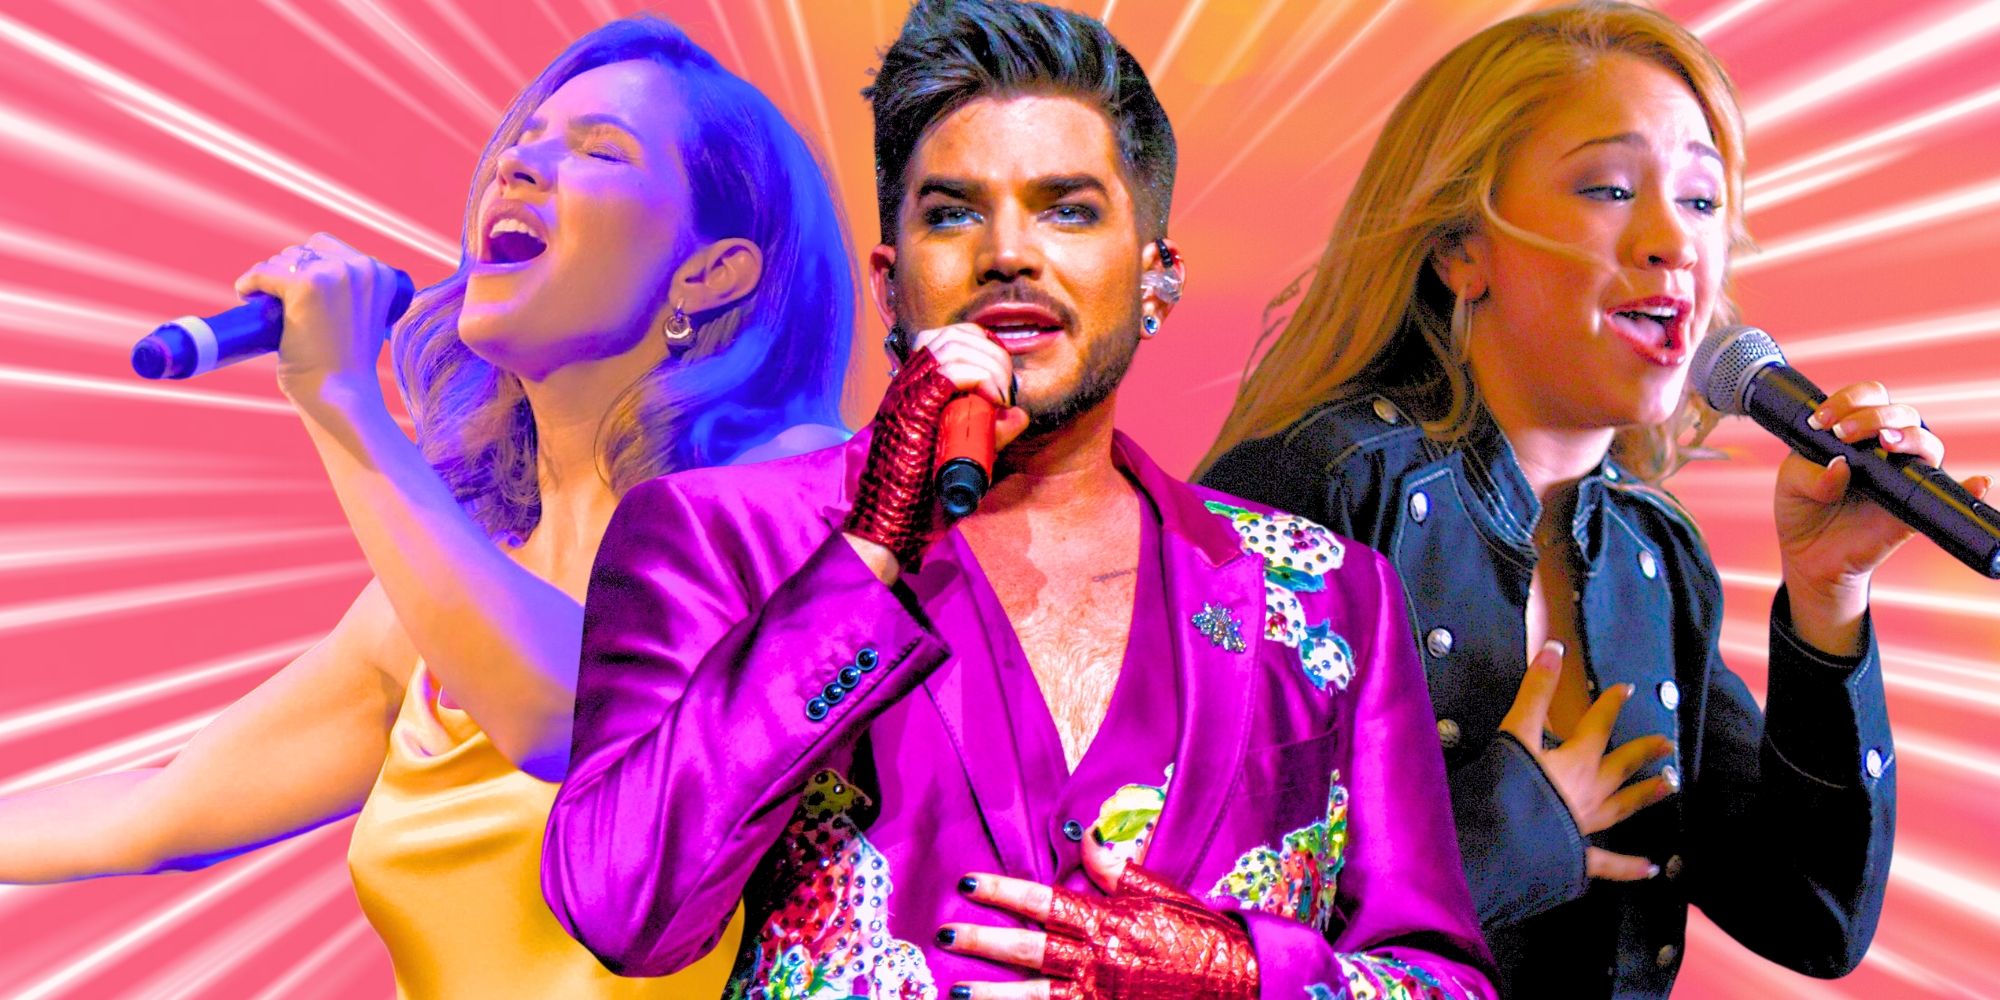 Cantante de American Idol revela reacción impactante luego de que un gran apagón interrumpiera su concierto